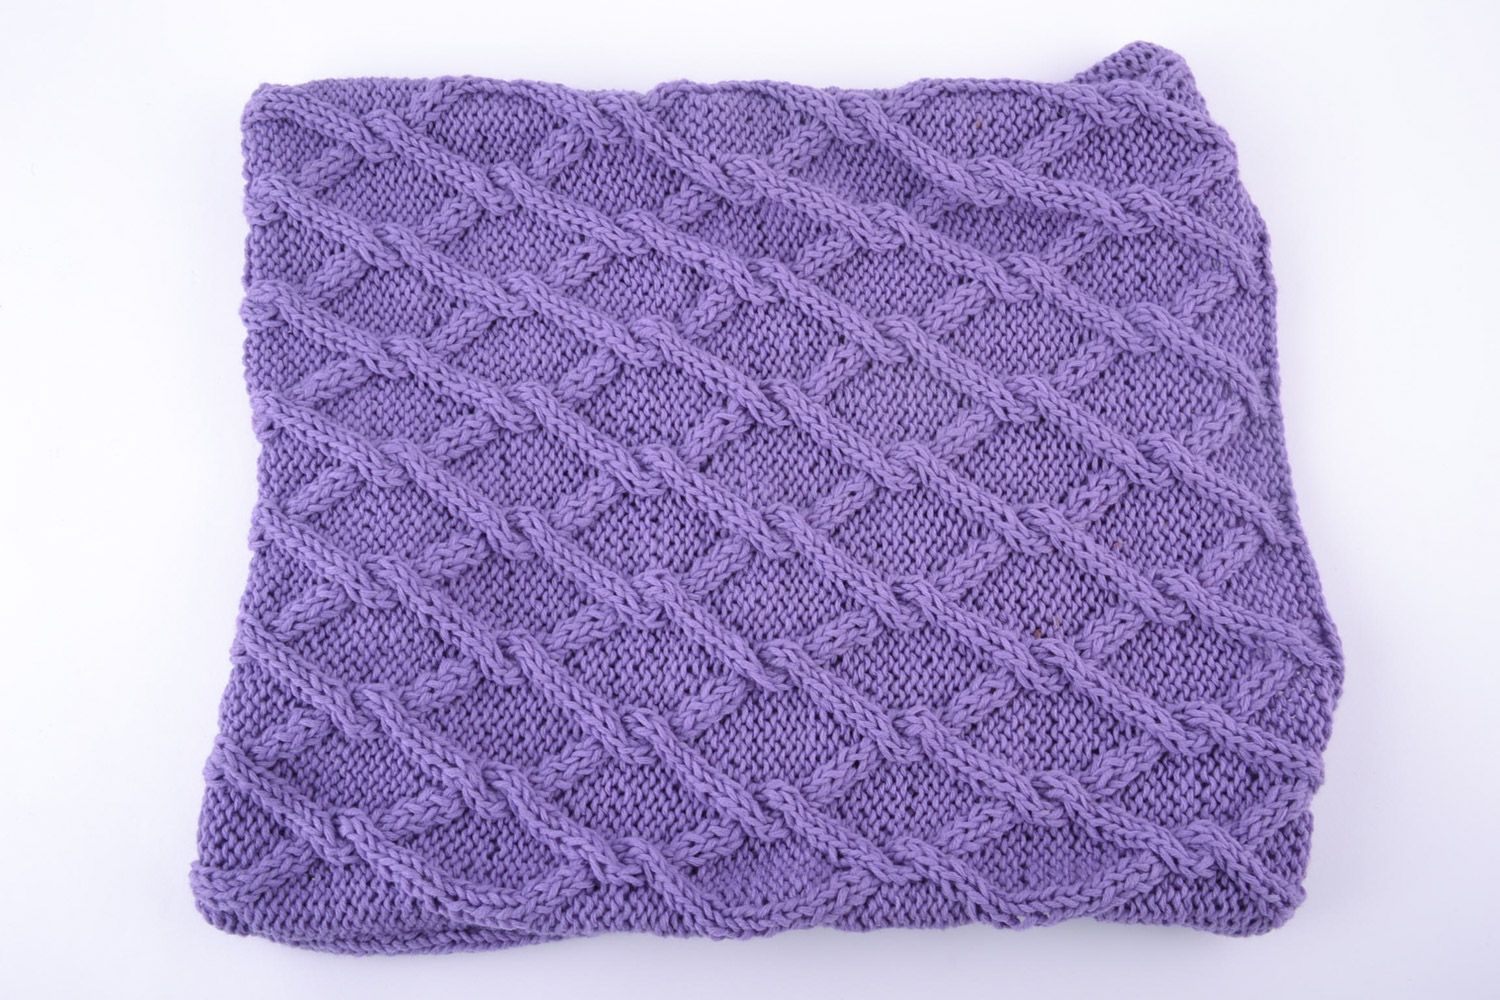 Чехол на подушку вязаный из полушерстяных фиолетовых ниток ручной работы на молнии фото 3